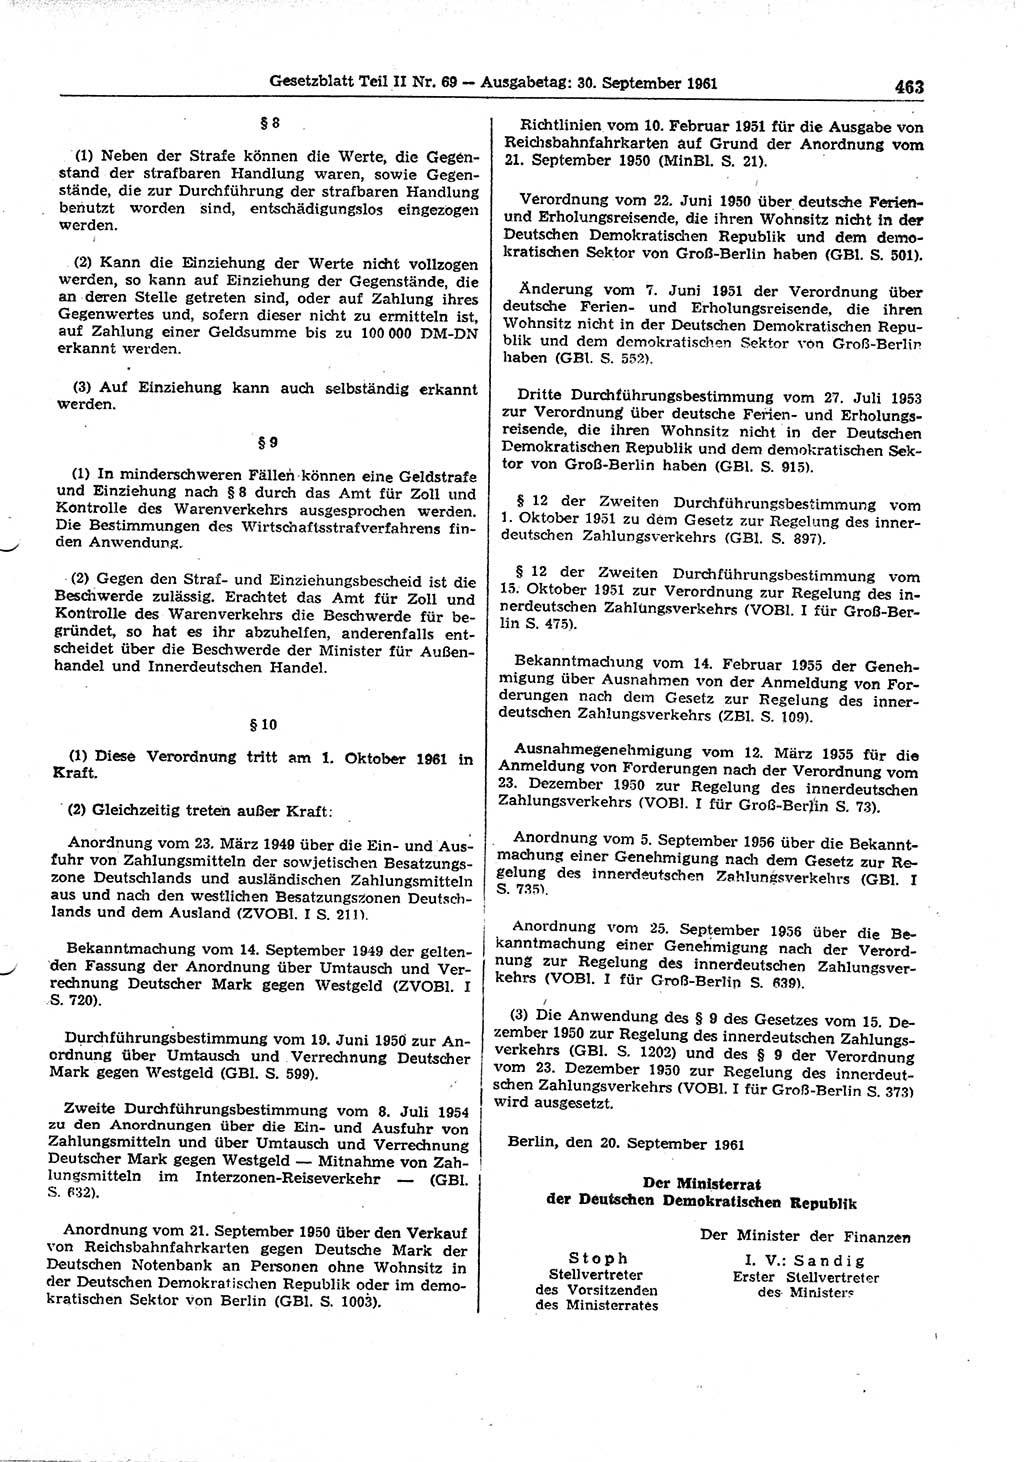 Gesetzblatt (GBl.) der Deutschen Demokratischen Republik (DDR) Teil ⅠⅠ 1961, Seite 463 (GBl. DDR ⅠⅠ 1961, S. 463)